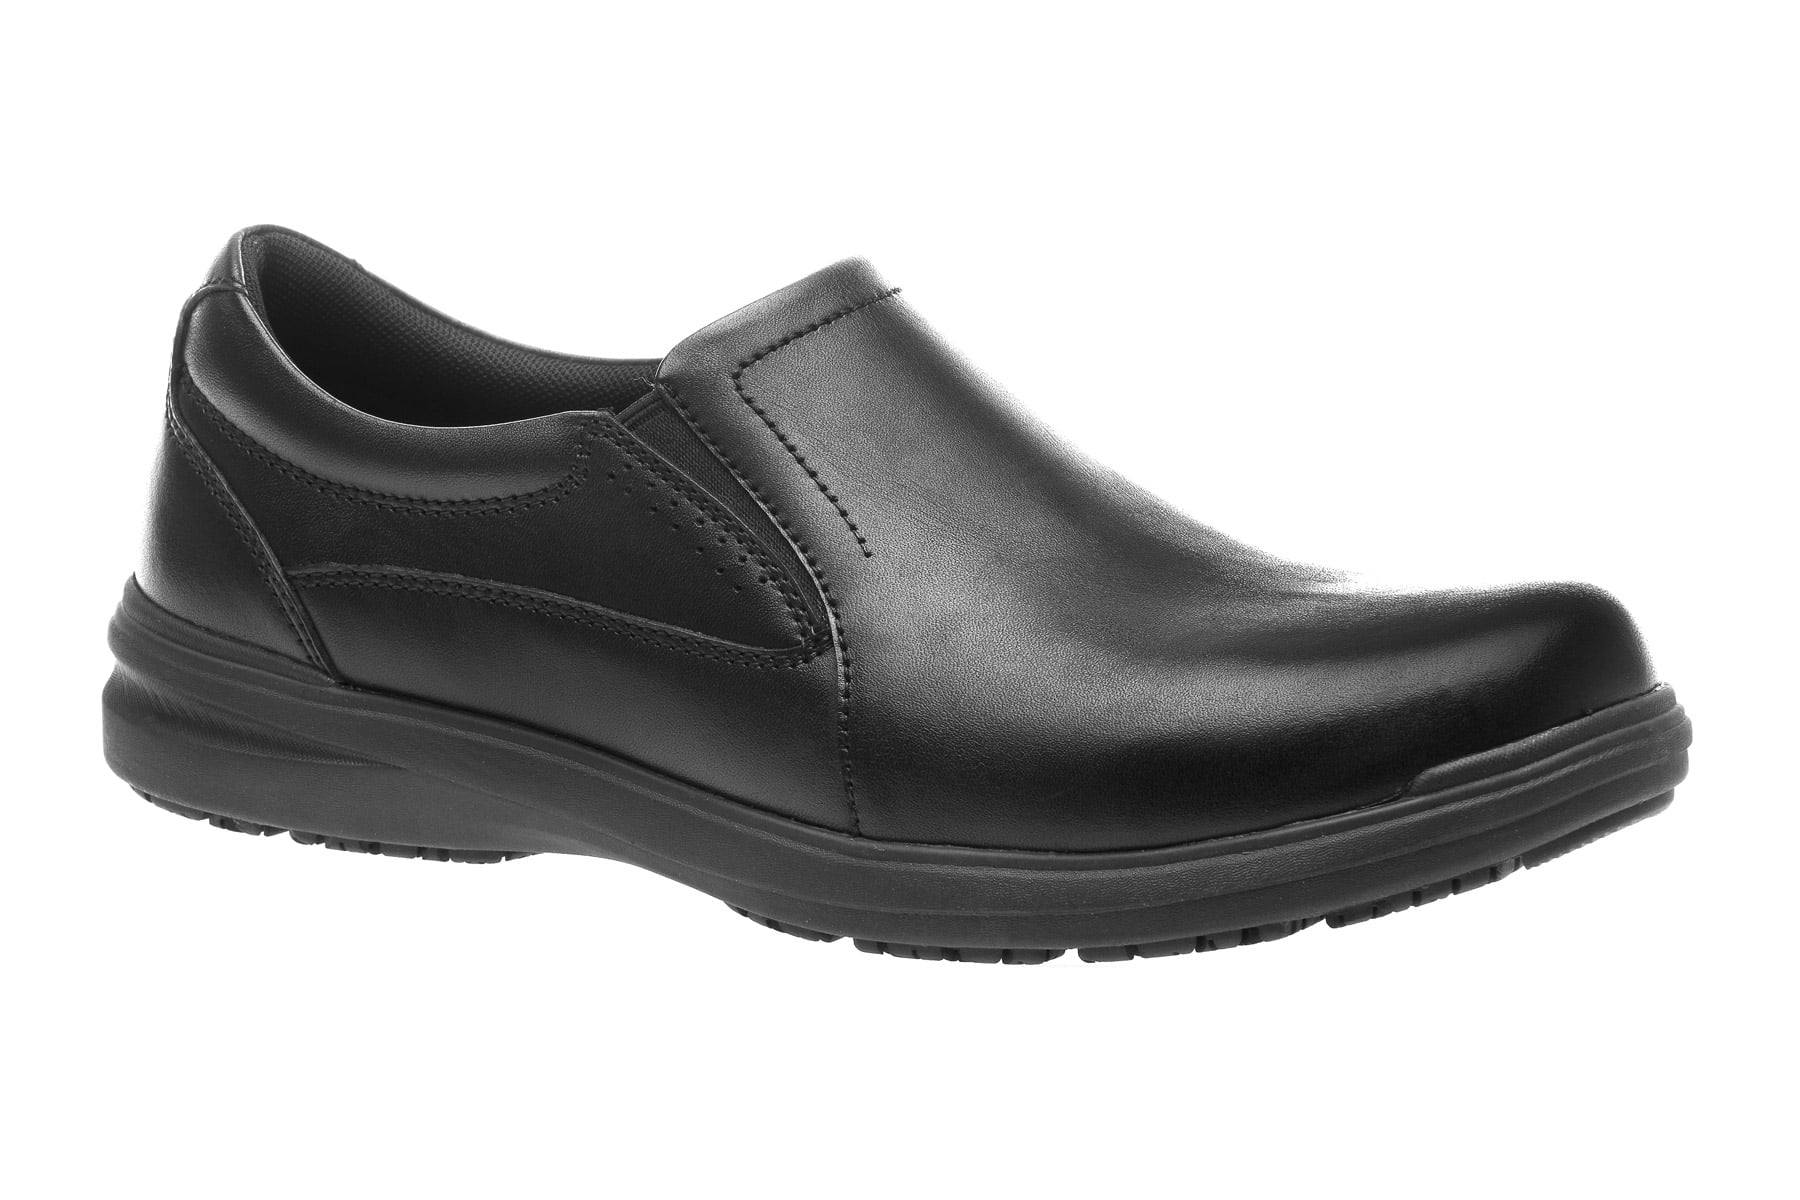 ABEO Footwear - ABEO Men's Smart 3850 